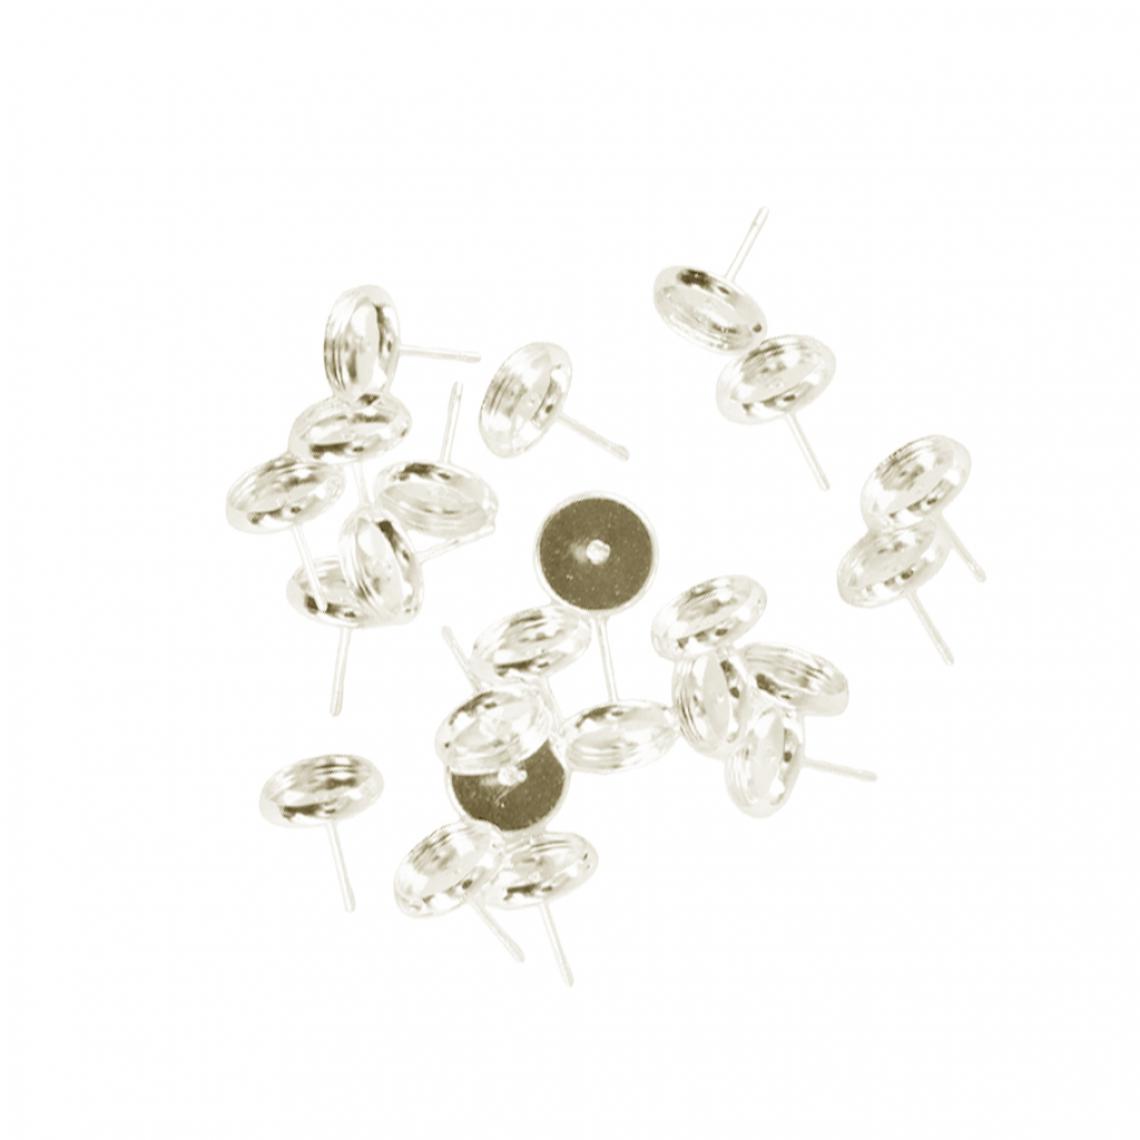 marque generique - 24 pièces vide 8mm boucle d'oreille plateau cabochon réglage bijoux diy or - Perles